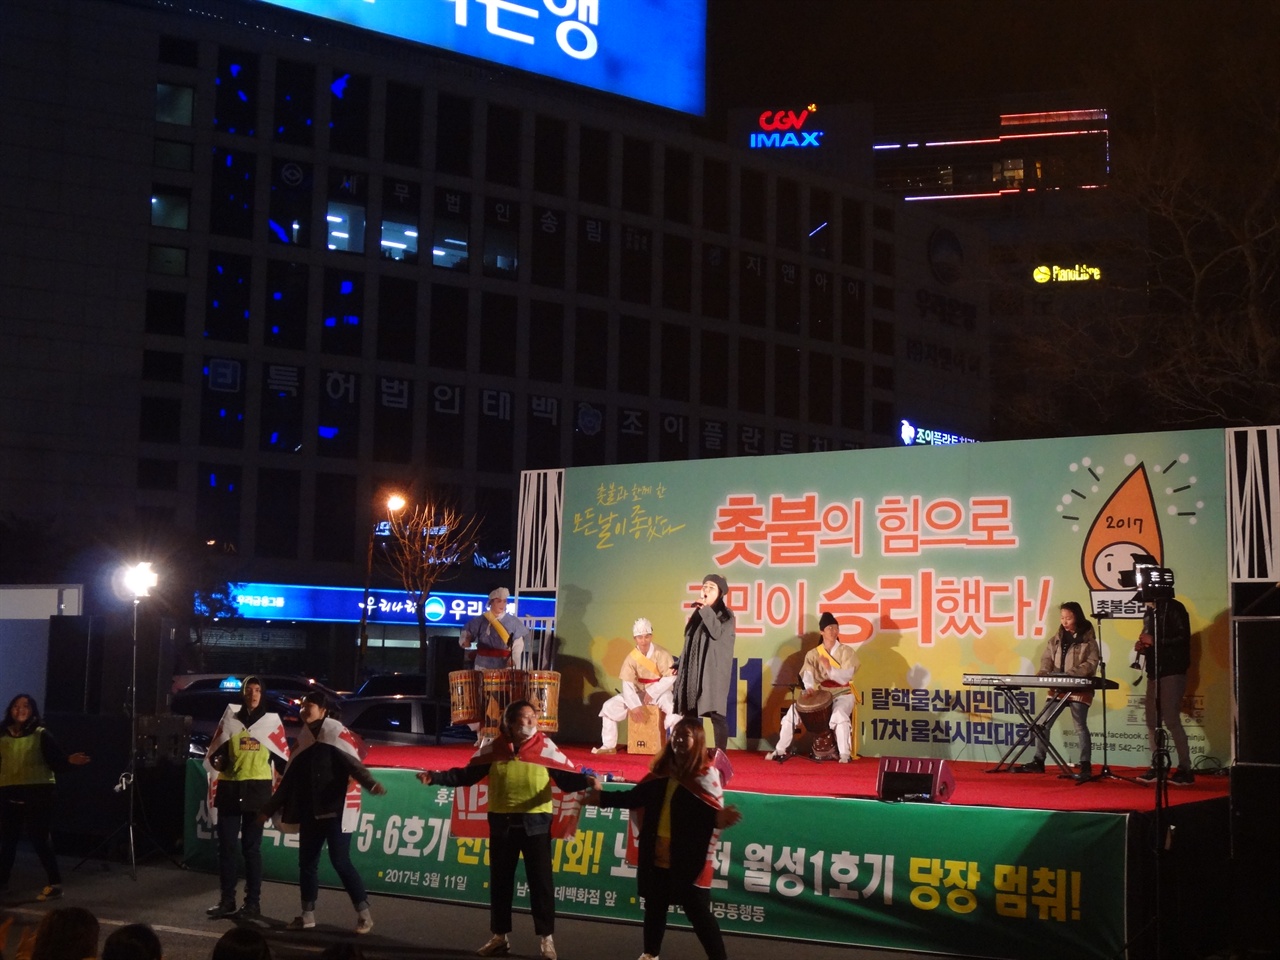 제 17차 울산시민대회의 마지막 공연이며 자원봉사자들이 춤추고 있다.